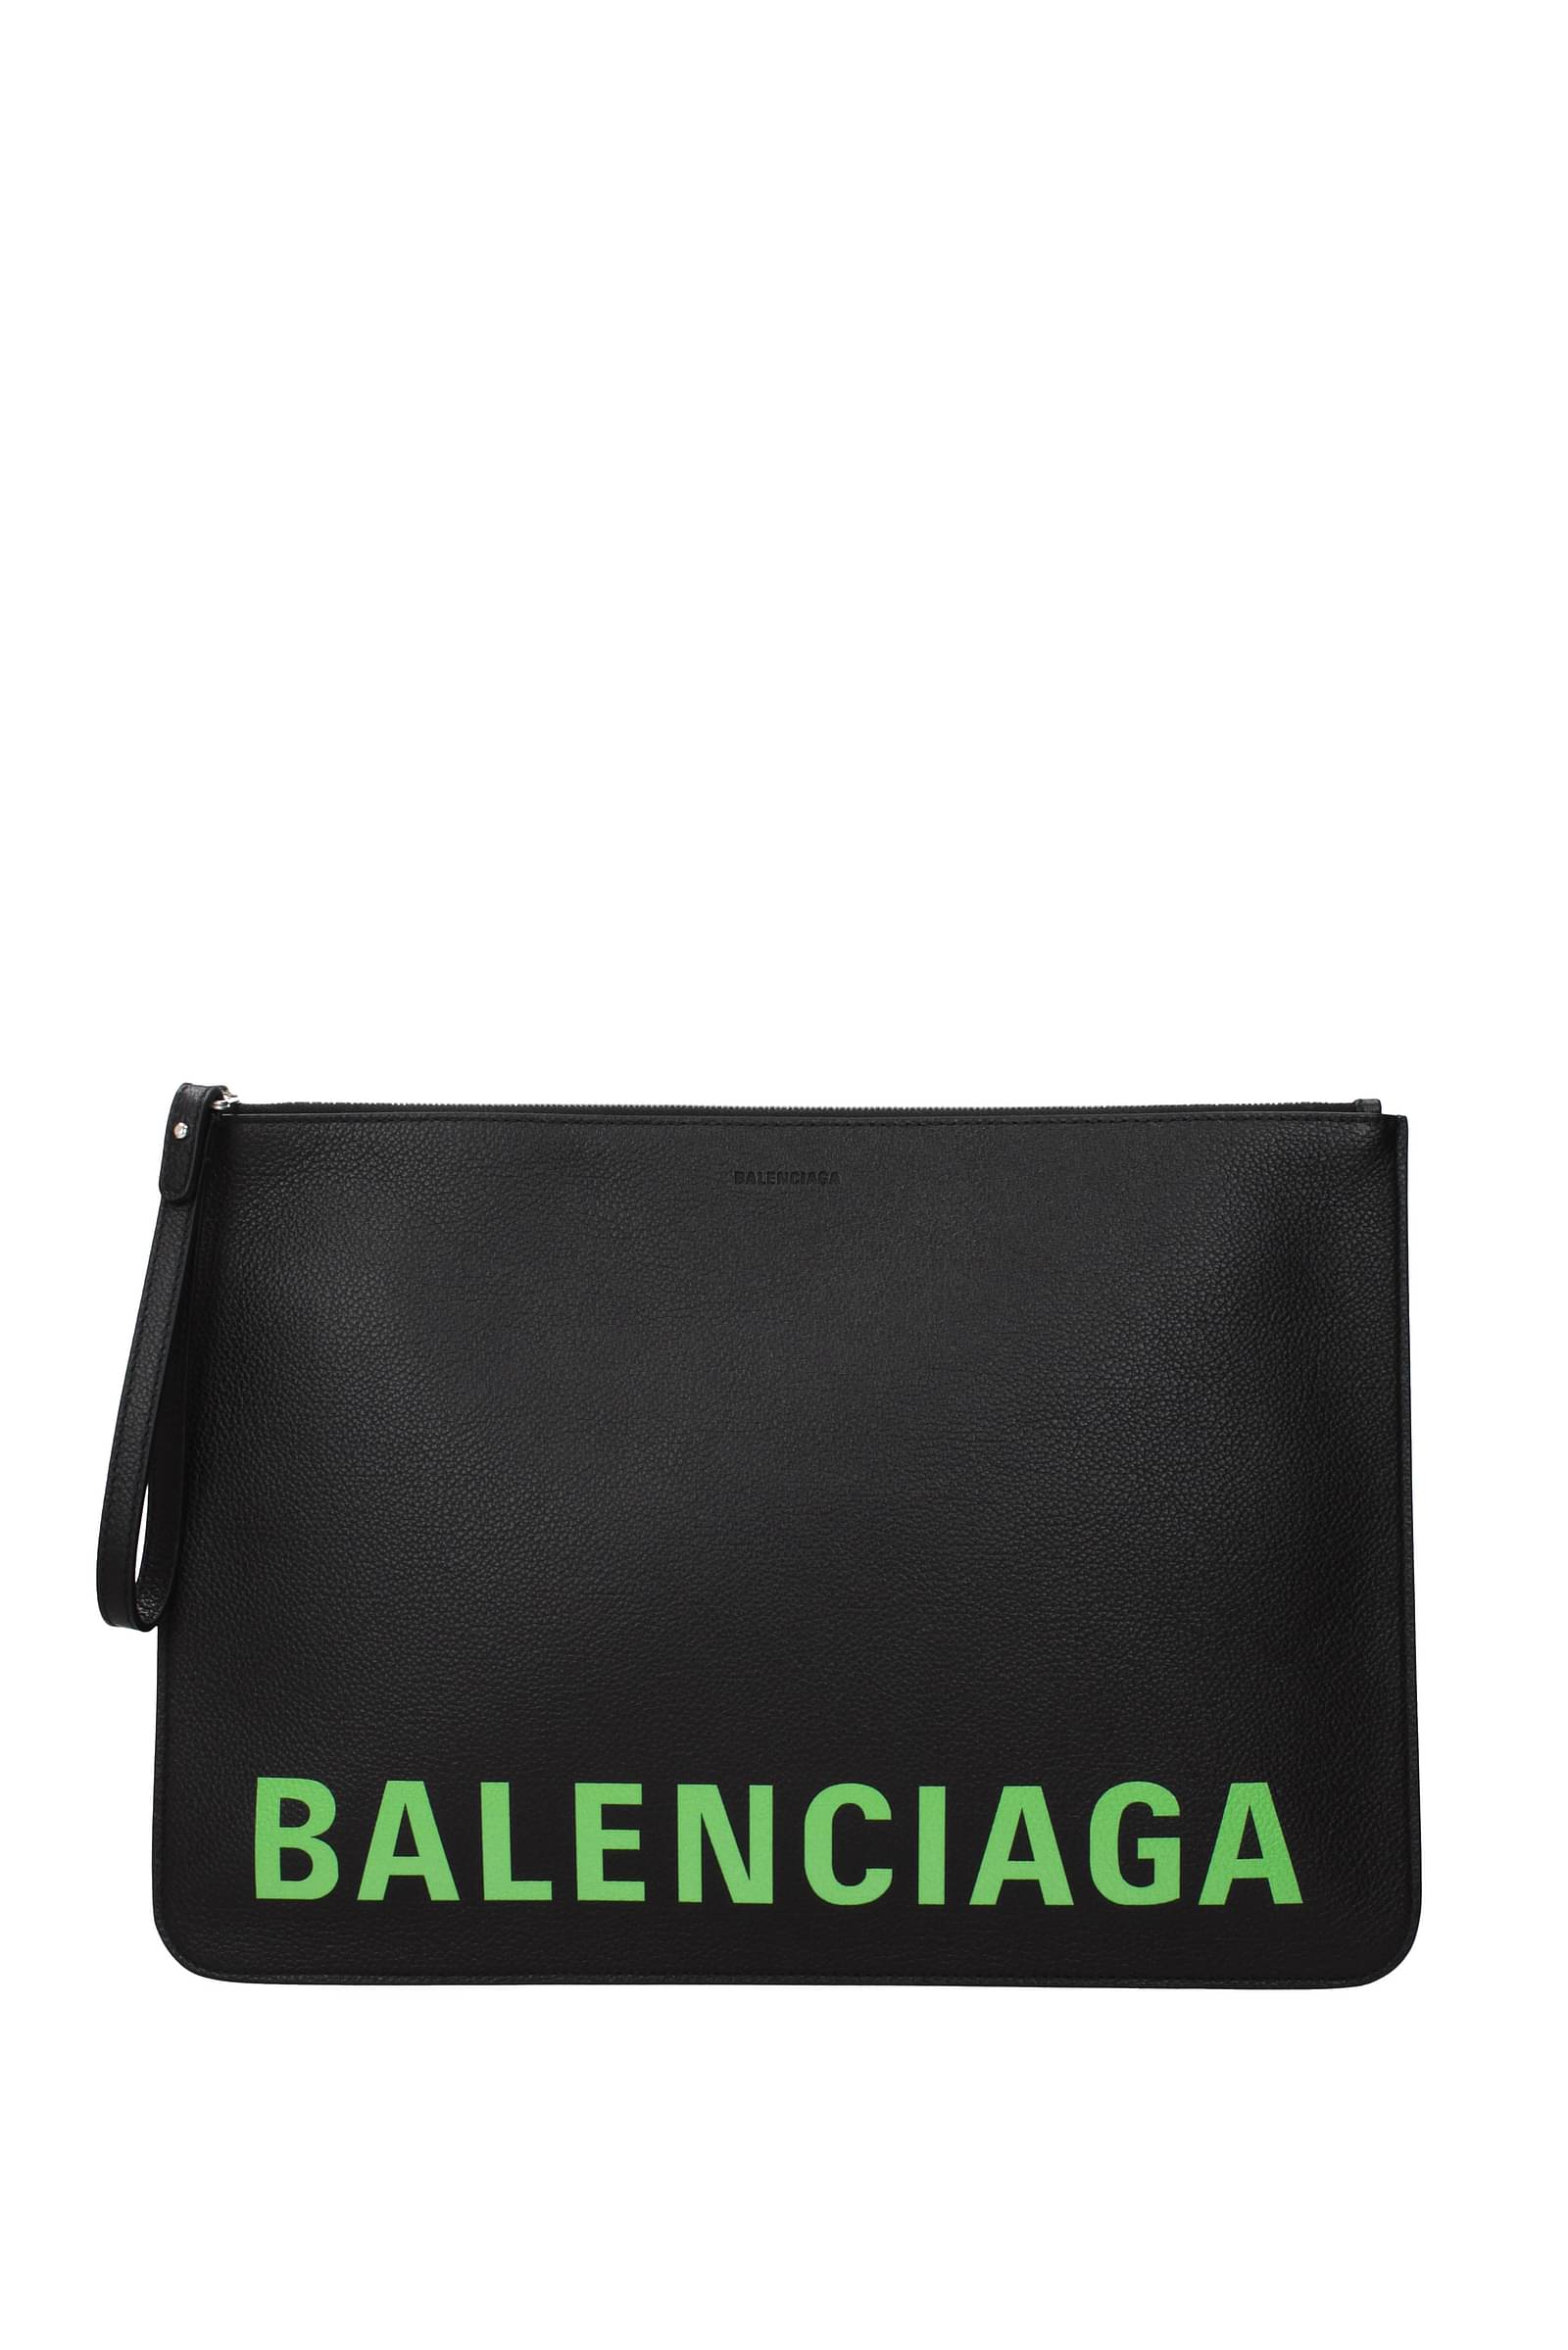 Authentic BALENCIAGA Giant City Bag RED Handbag  eBay